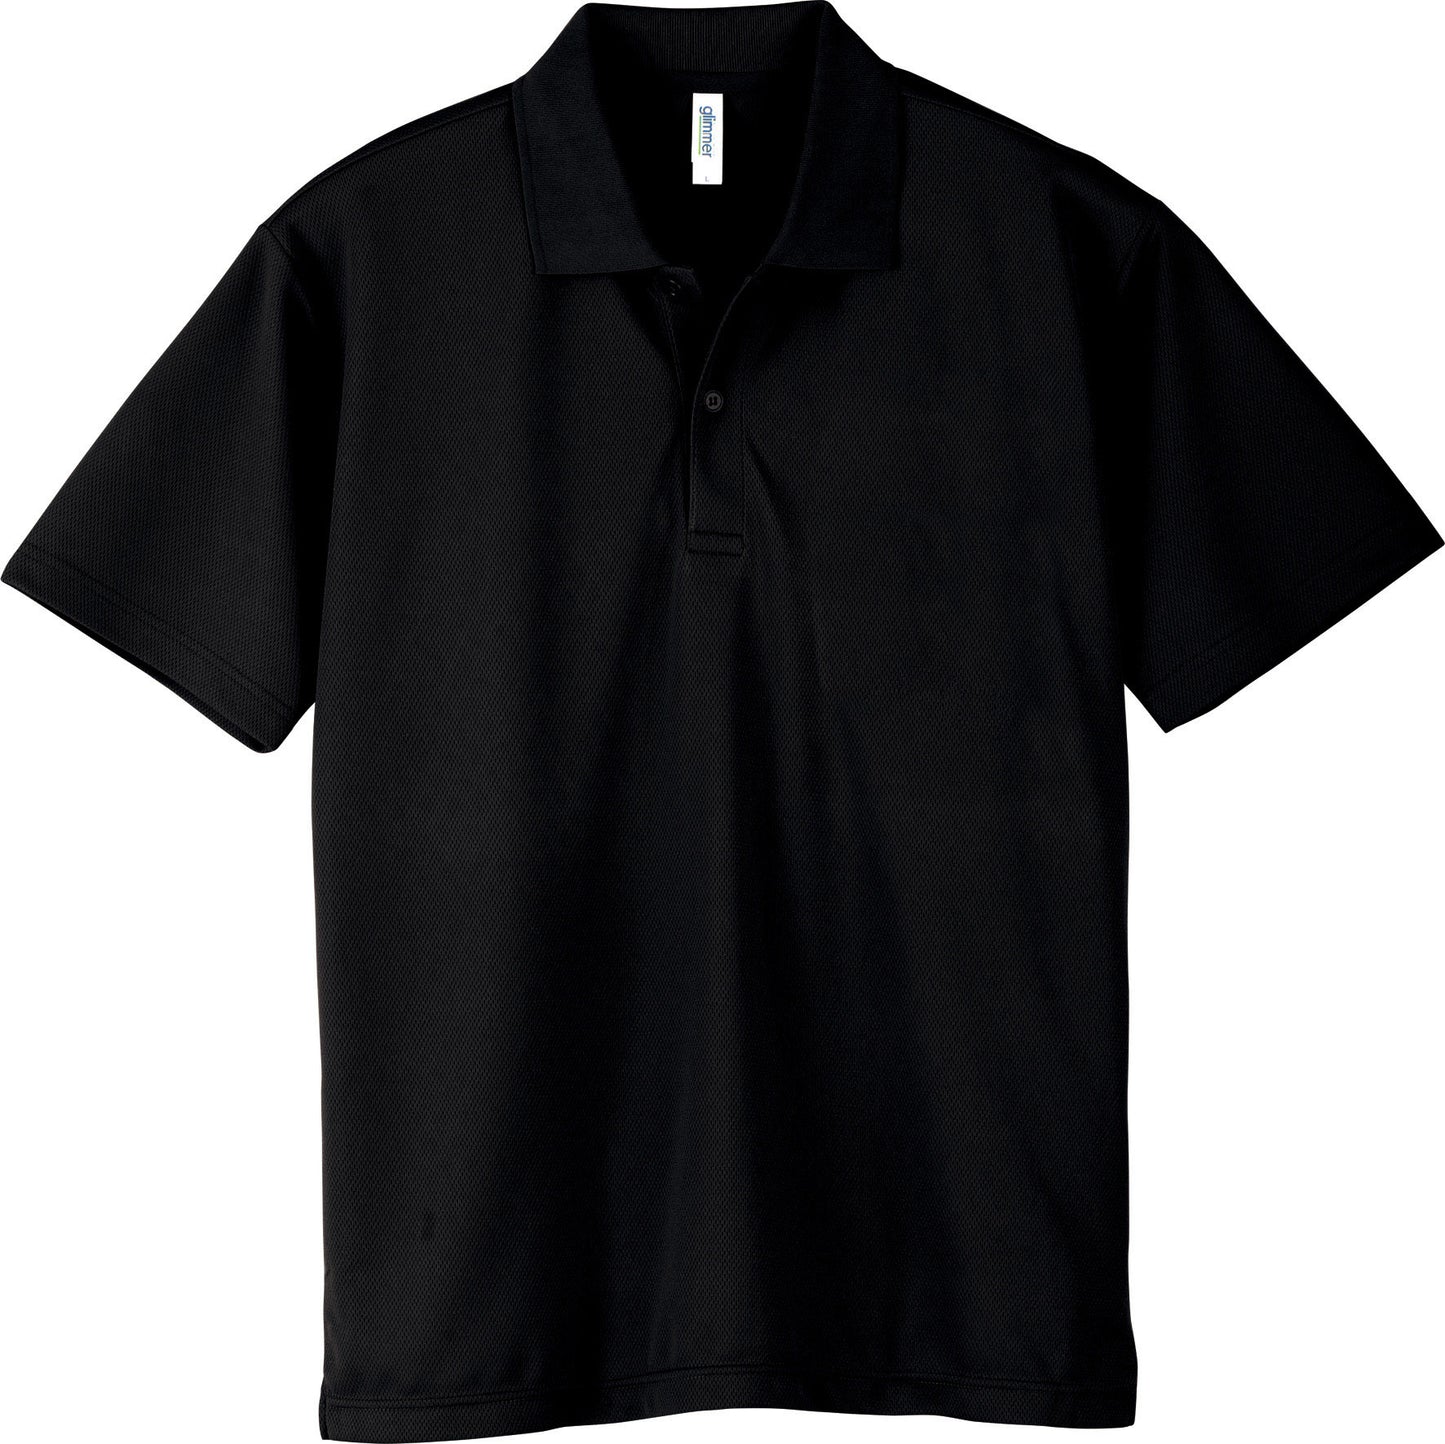 [Plus-1] 302-ADP 4.4oz dry polo shirt 140cm/150cm